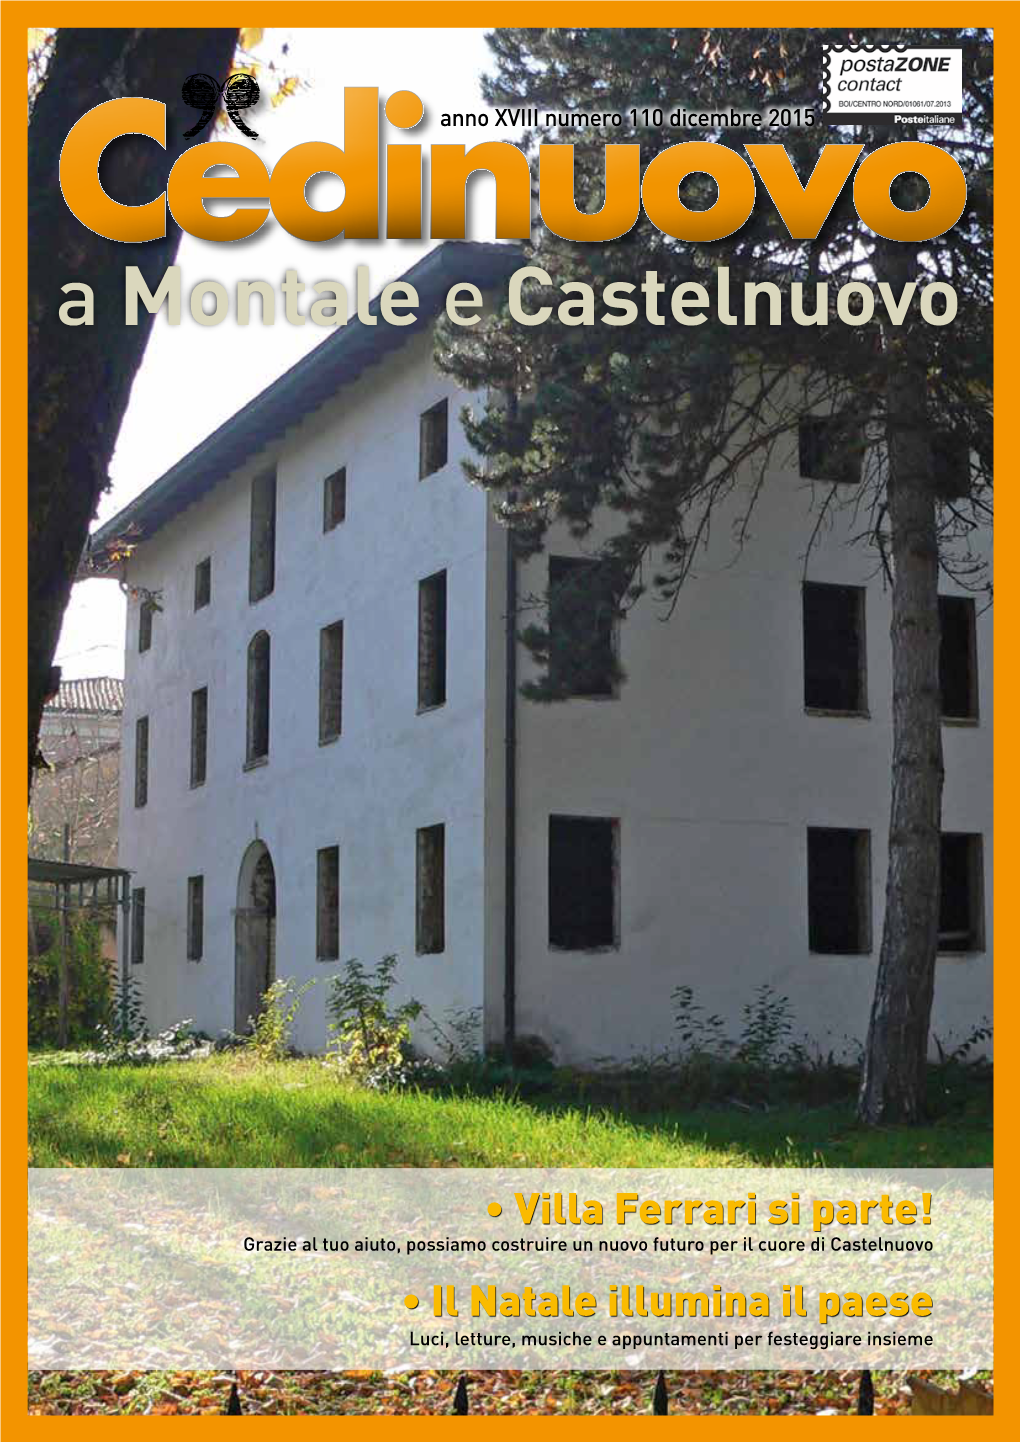 A Montale E Castelnuovo